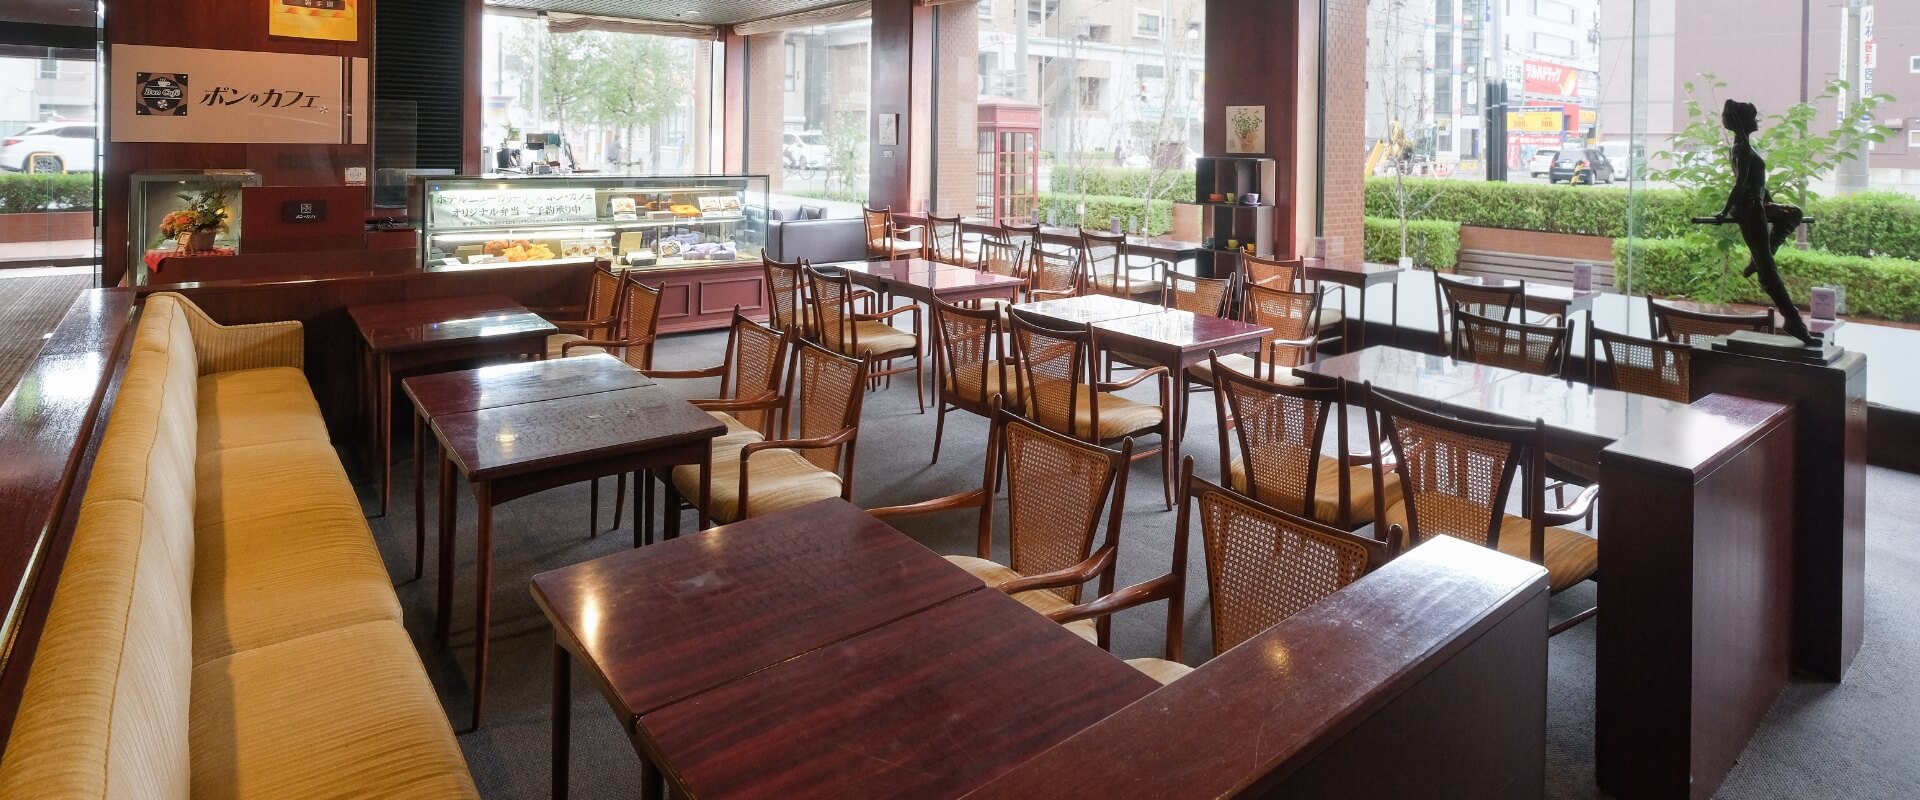 CAFE LOUNGE 落ち着いた雰囲気のロビーラウンジお食事とお飲み物をを楽しむことができる空間